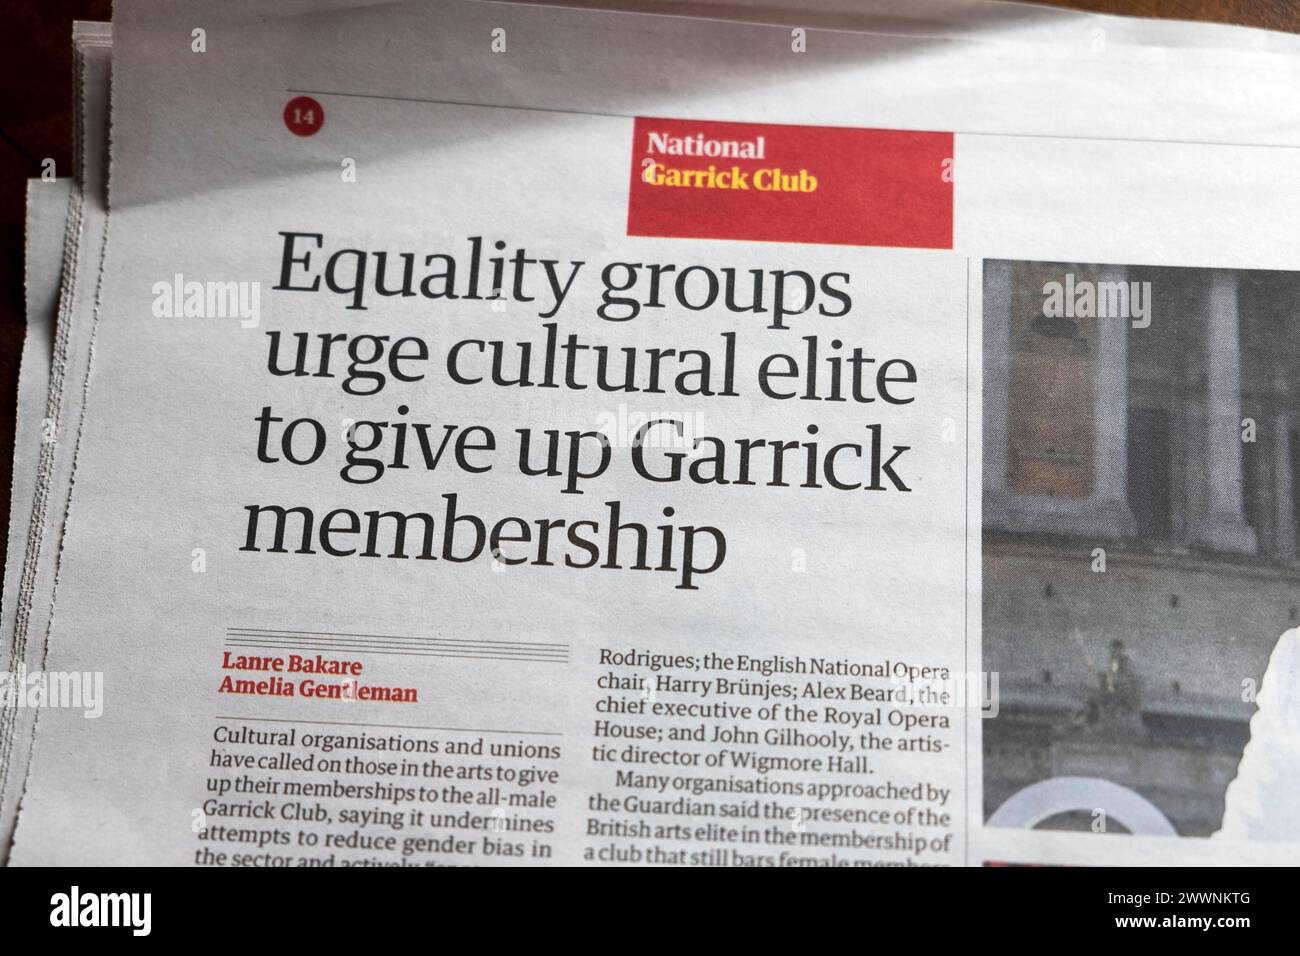 "Les groupes pour l'égalité exhortent l'élite culturelle à renoncer à l'adhésion à Garrick (Club)" titre du journal Guardian 23 mars 2024 Londres Angleterre Royaume-Uni Banque D'Images